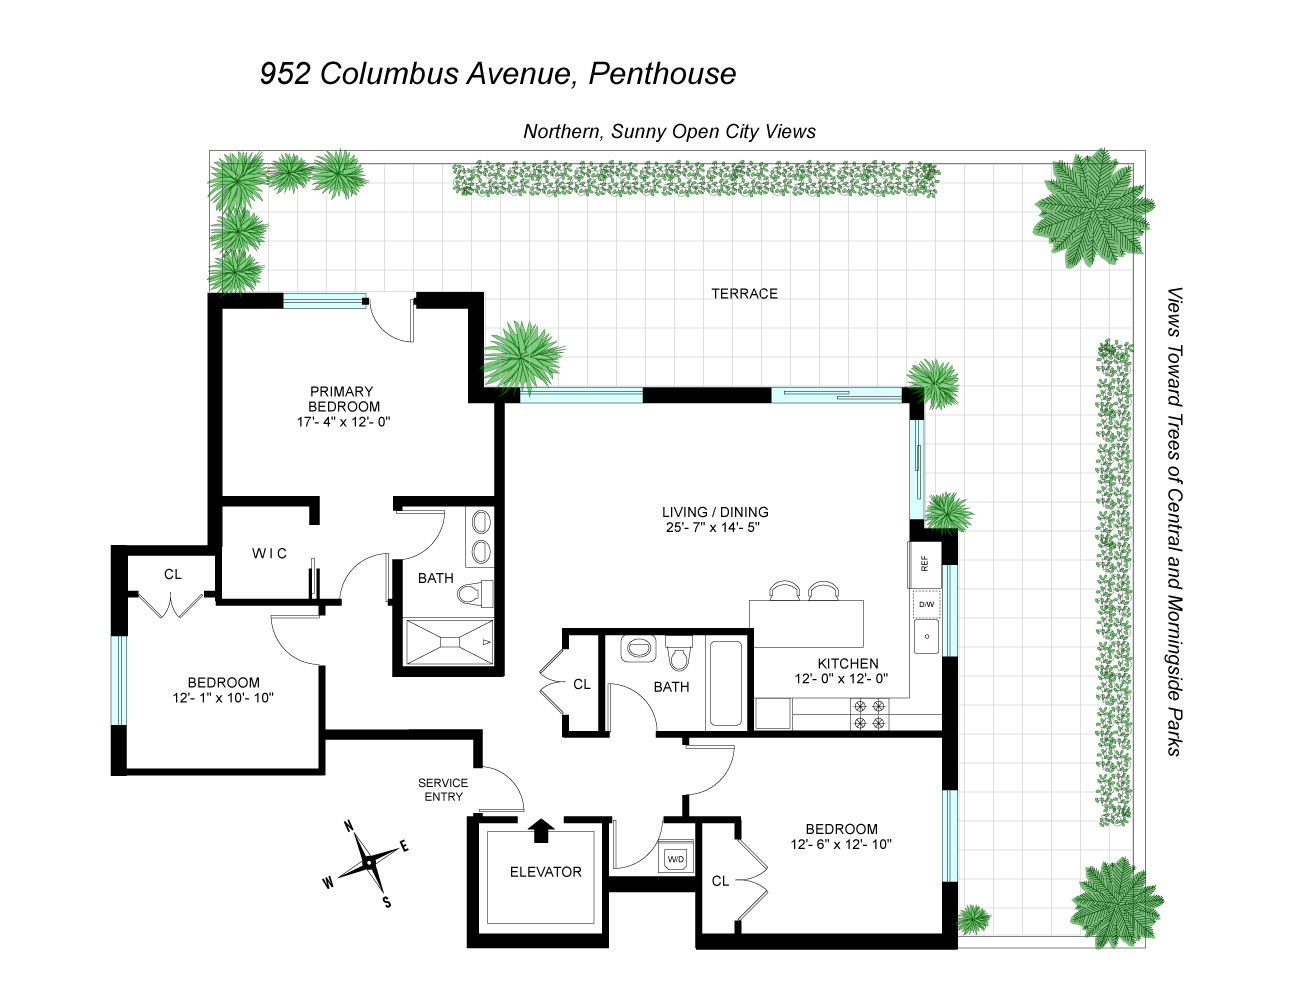 Floorplan for 952 Columbus Avenue, PH